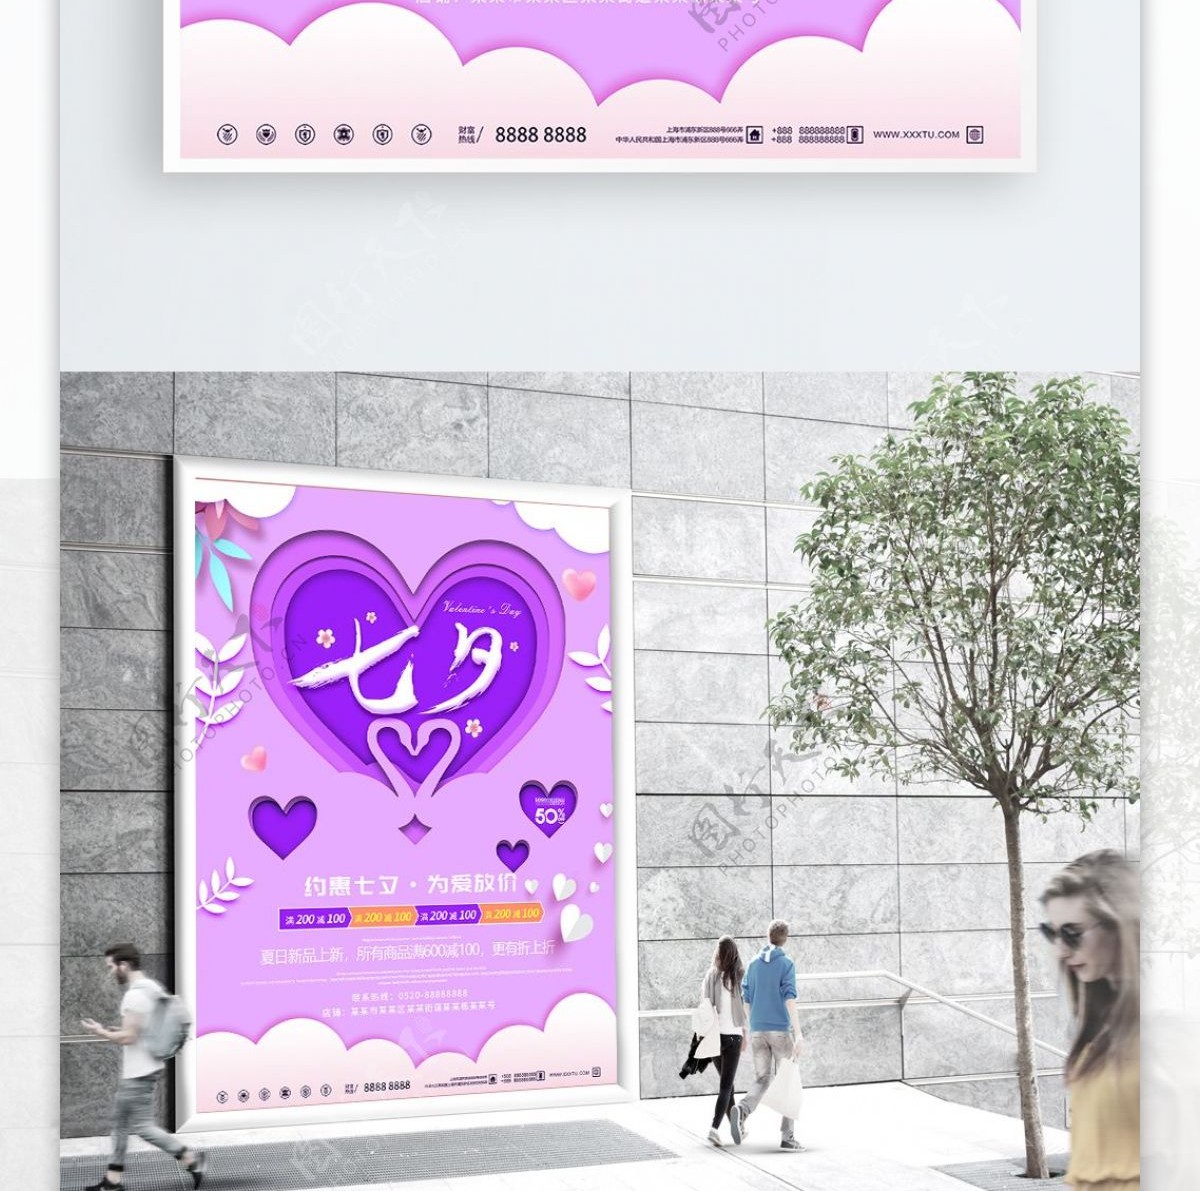 紫色浪漫剪纸风立体七夕促销海报